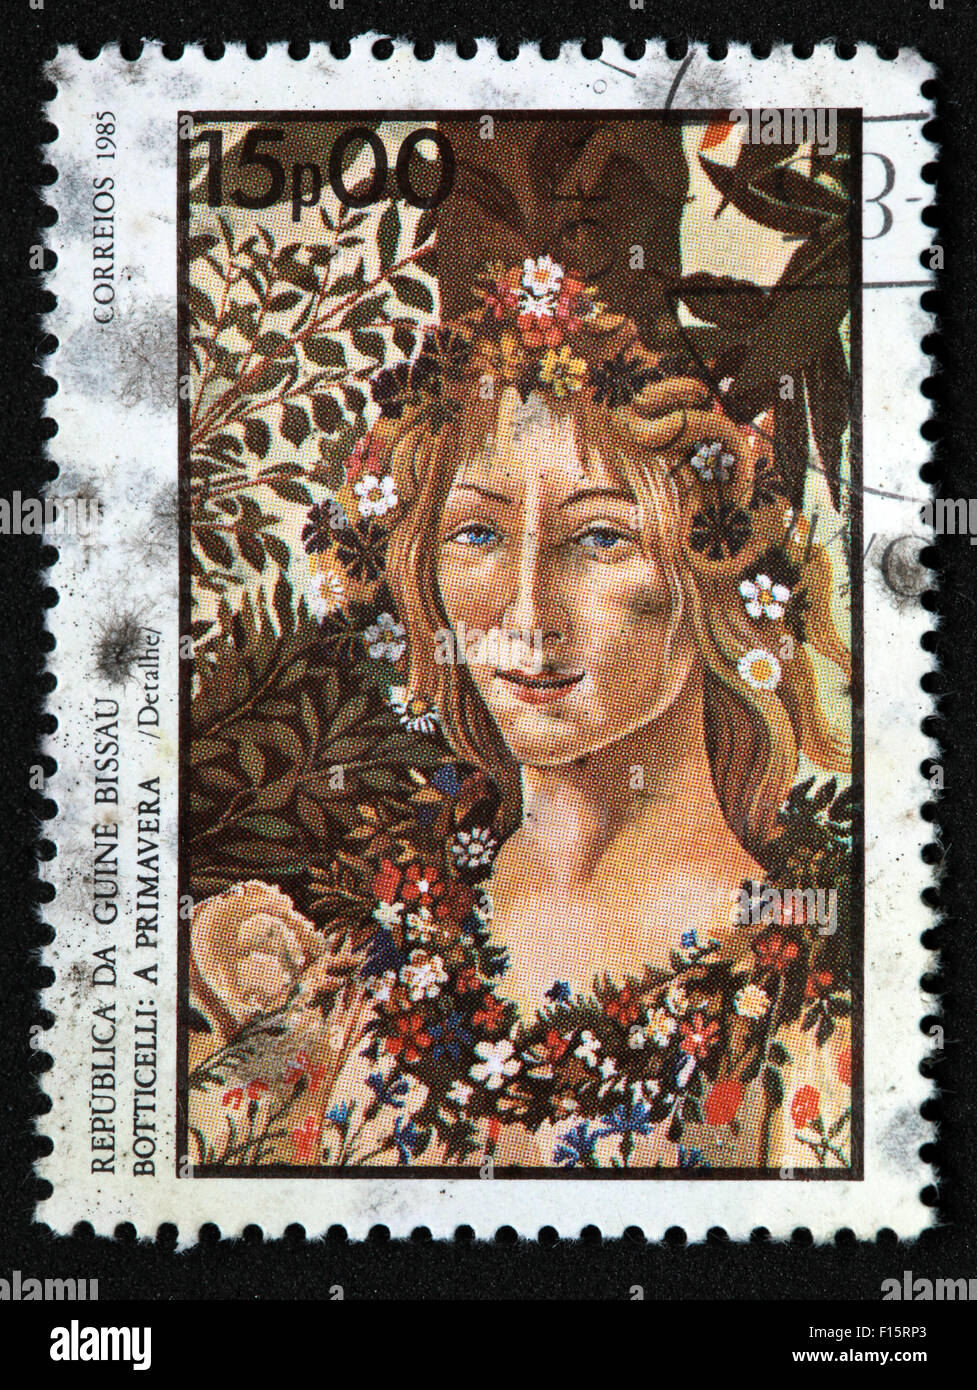 Republica Da Guinea Bissau un Botticelli Primavera Le Printemps à Correios 1985 15p00 fille femme des fleurs dans les cheveux stamp Banque D'Images